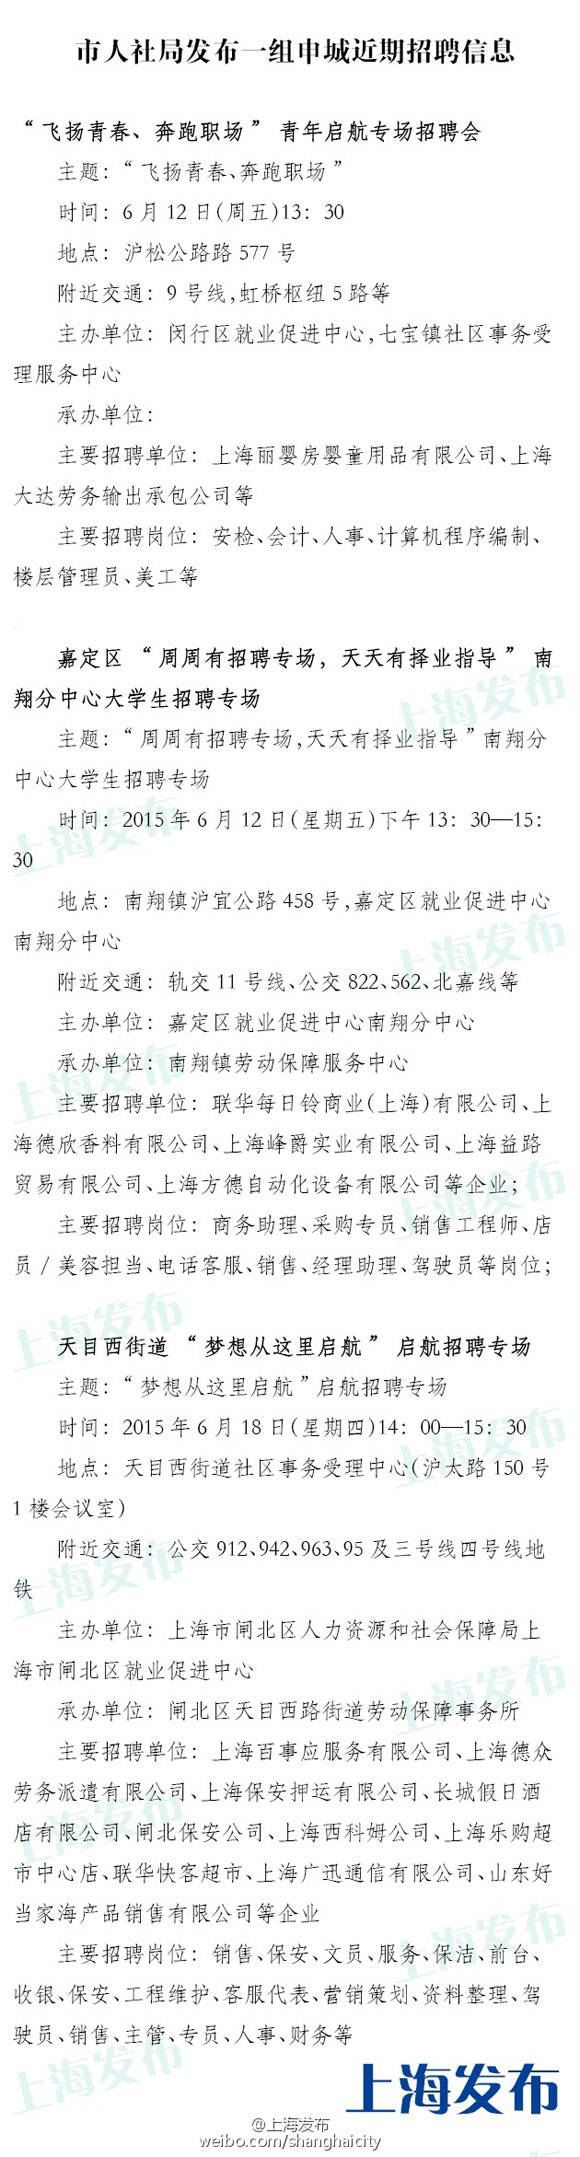 上海近期3场招聘会信息:招聘安检会计人事等